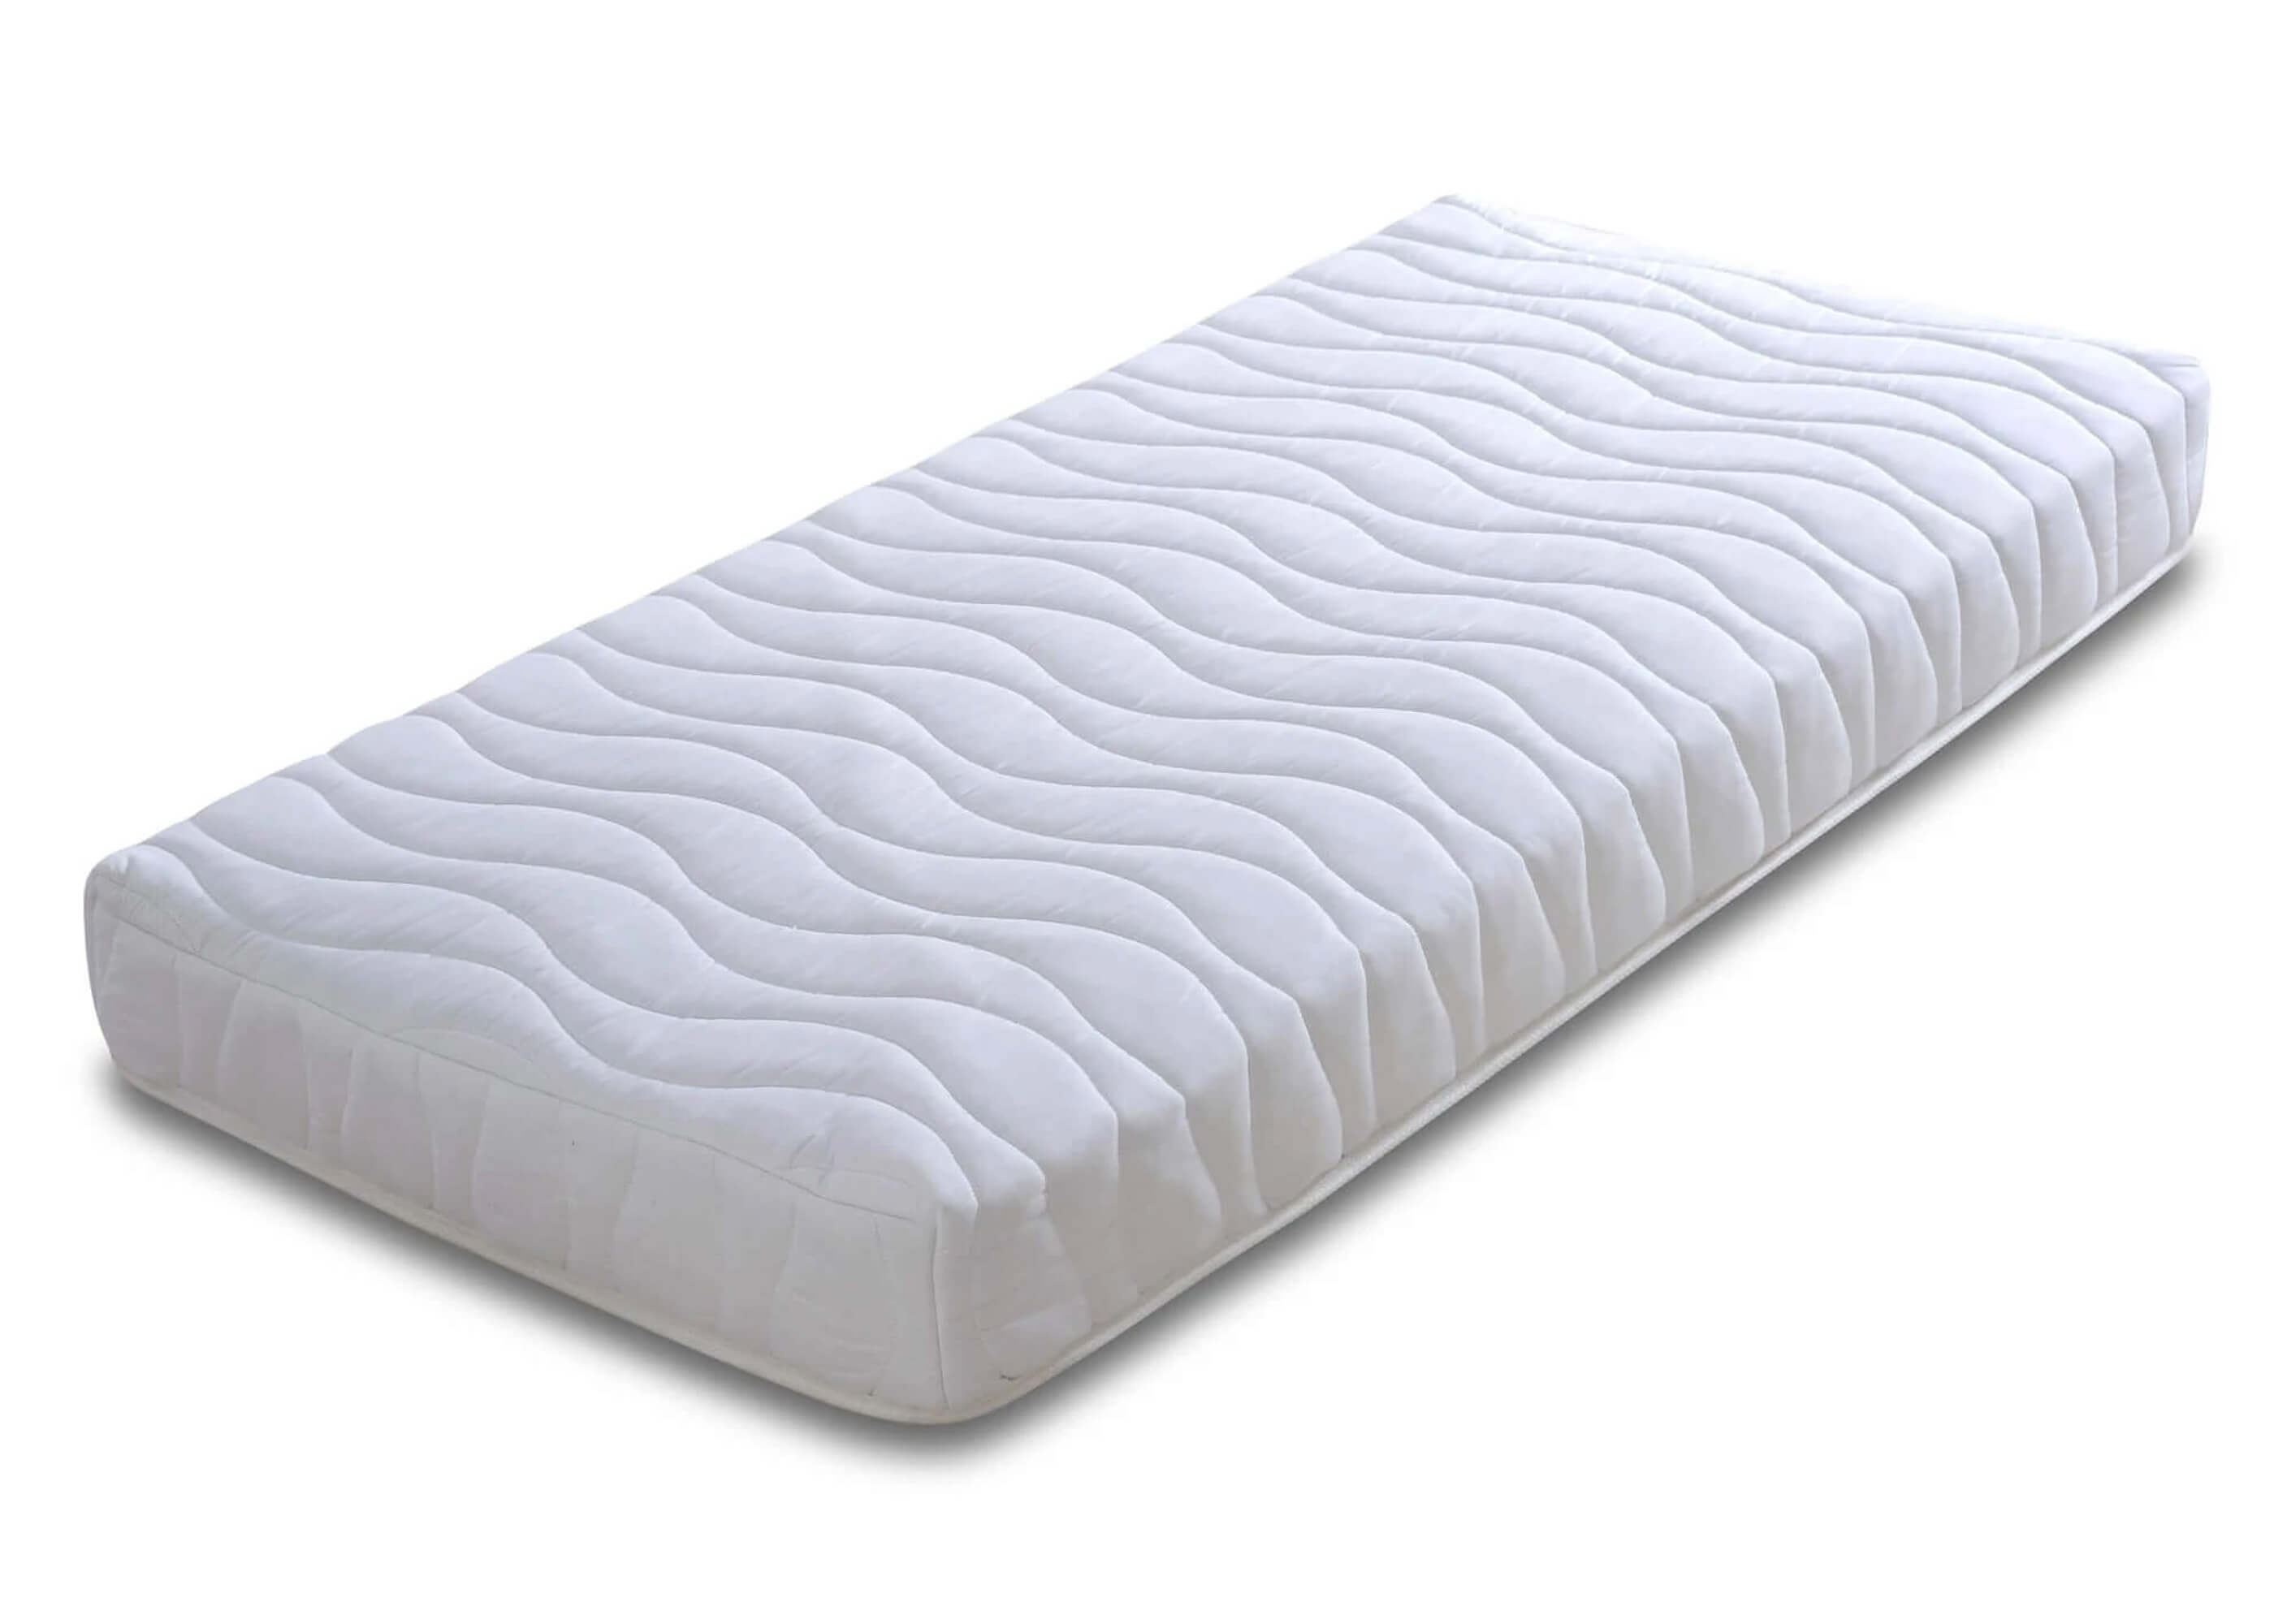 foam mattress for bunk beds